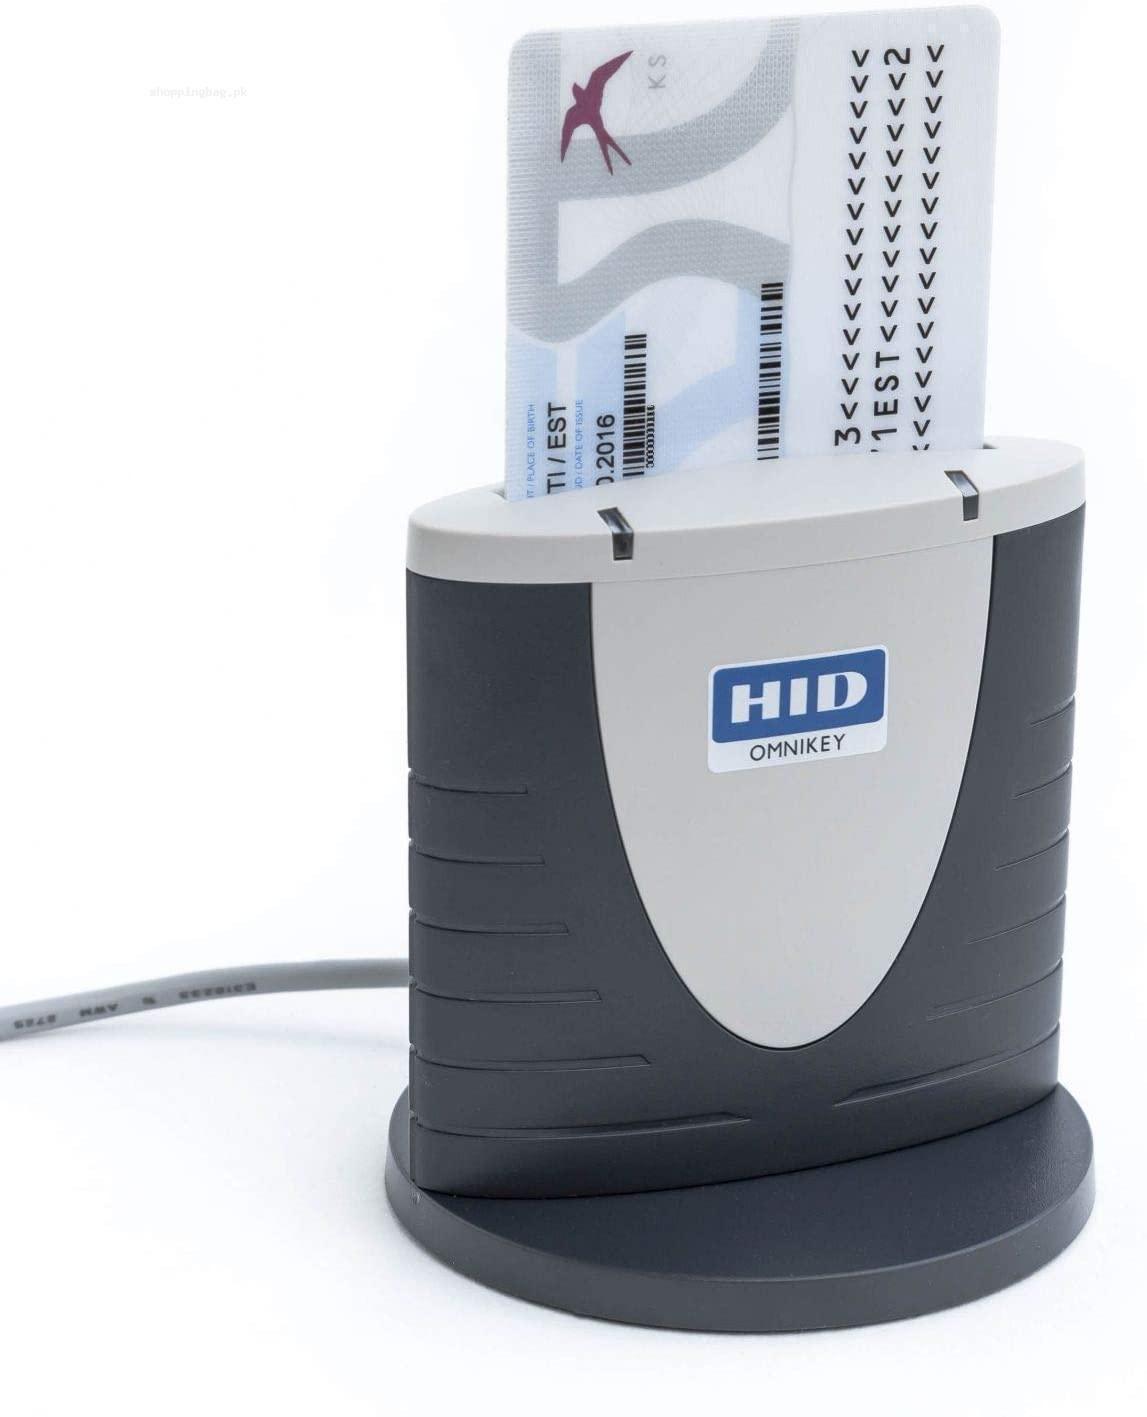 HID OMNIKEY Smart Card reader 3.0 USB by HID Global - Grey